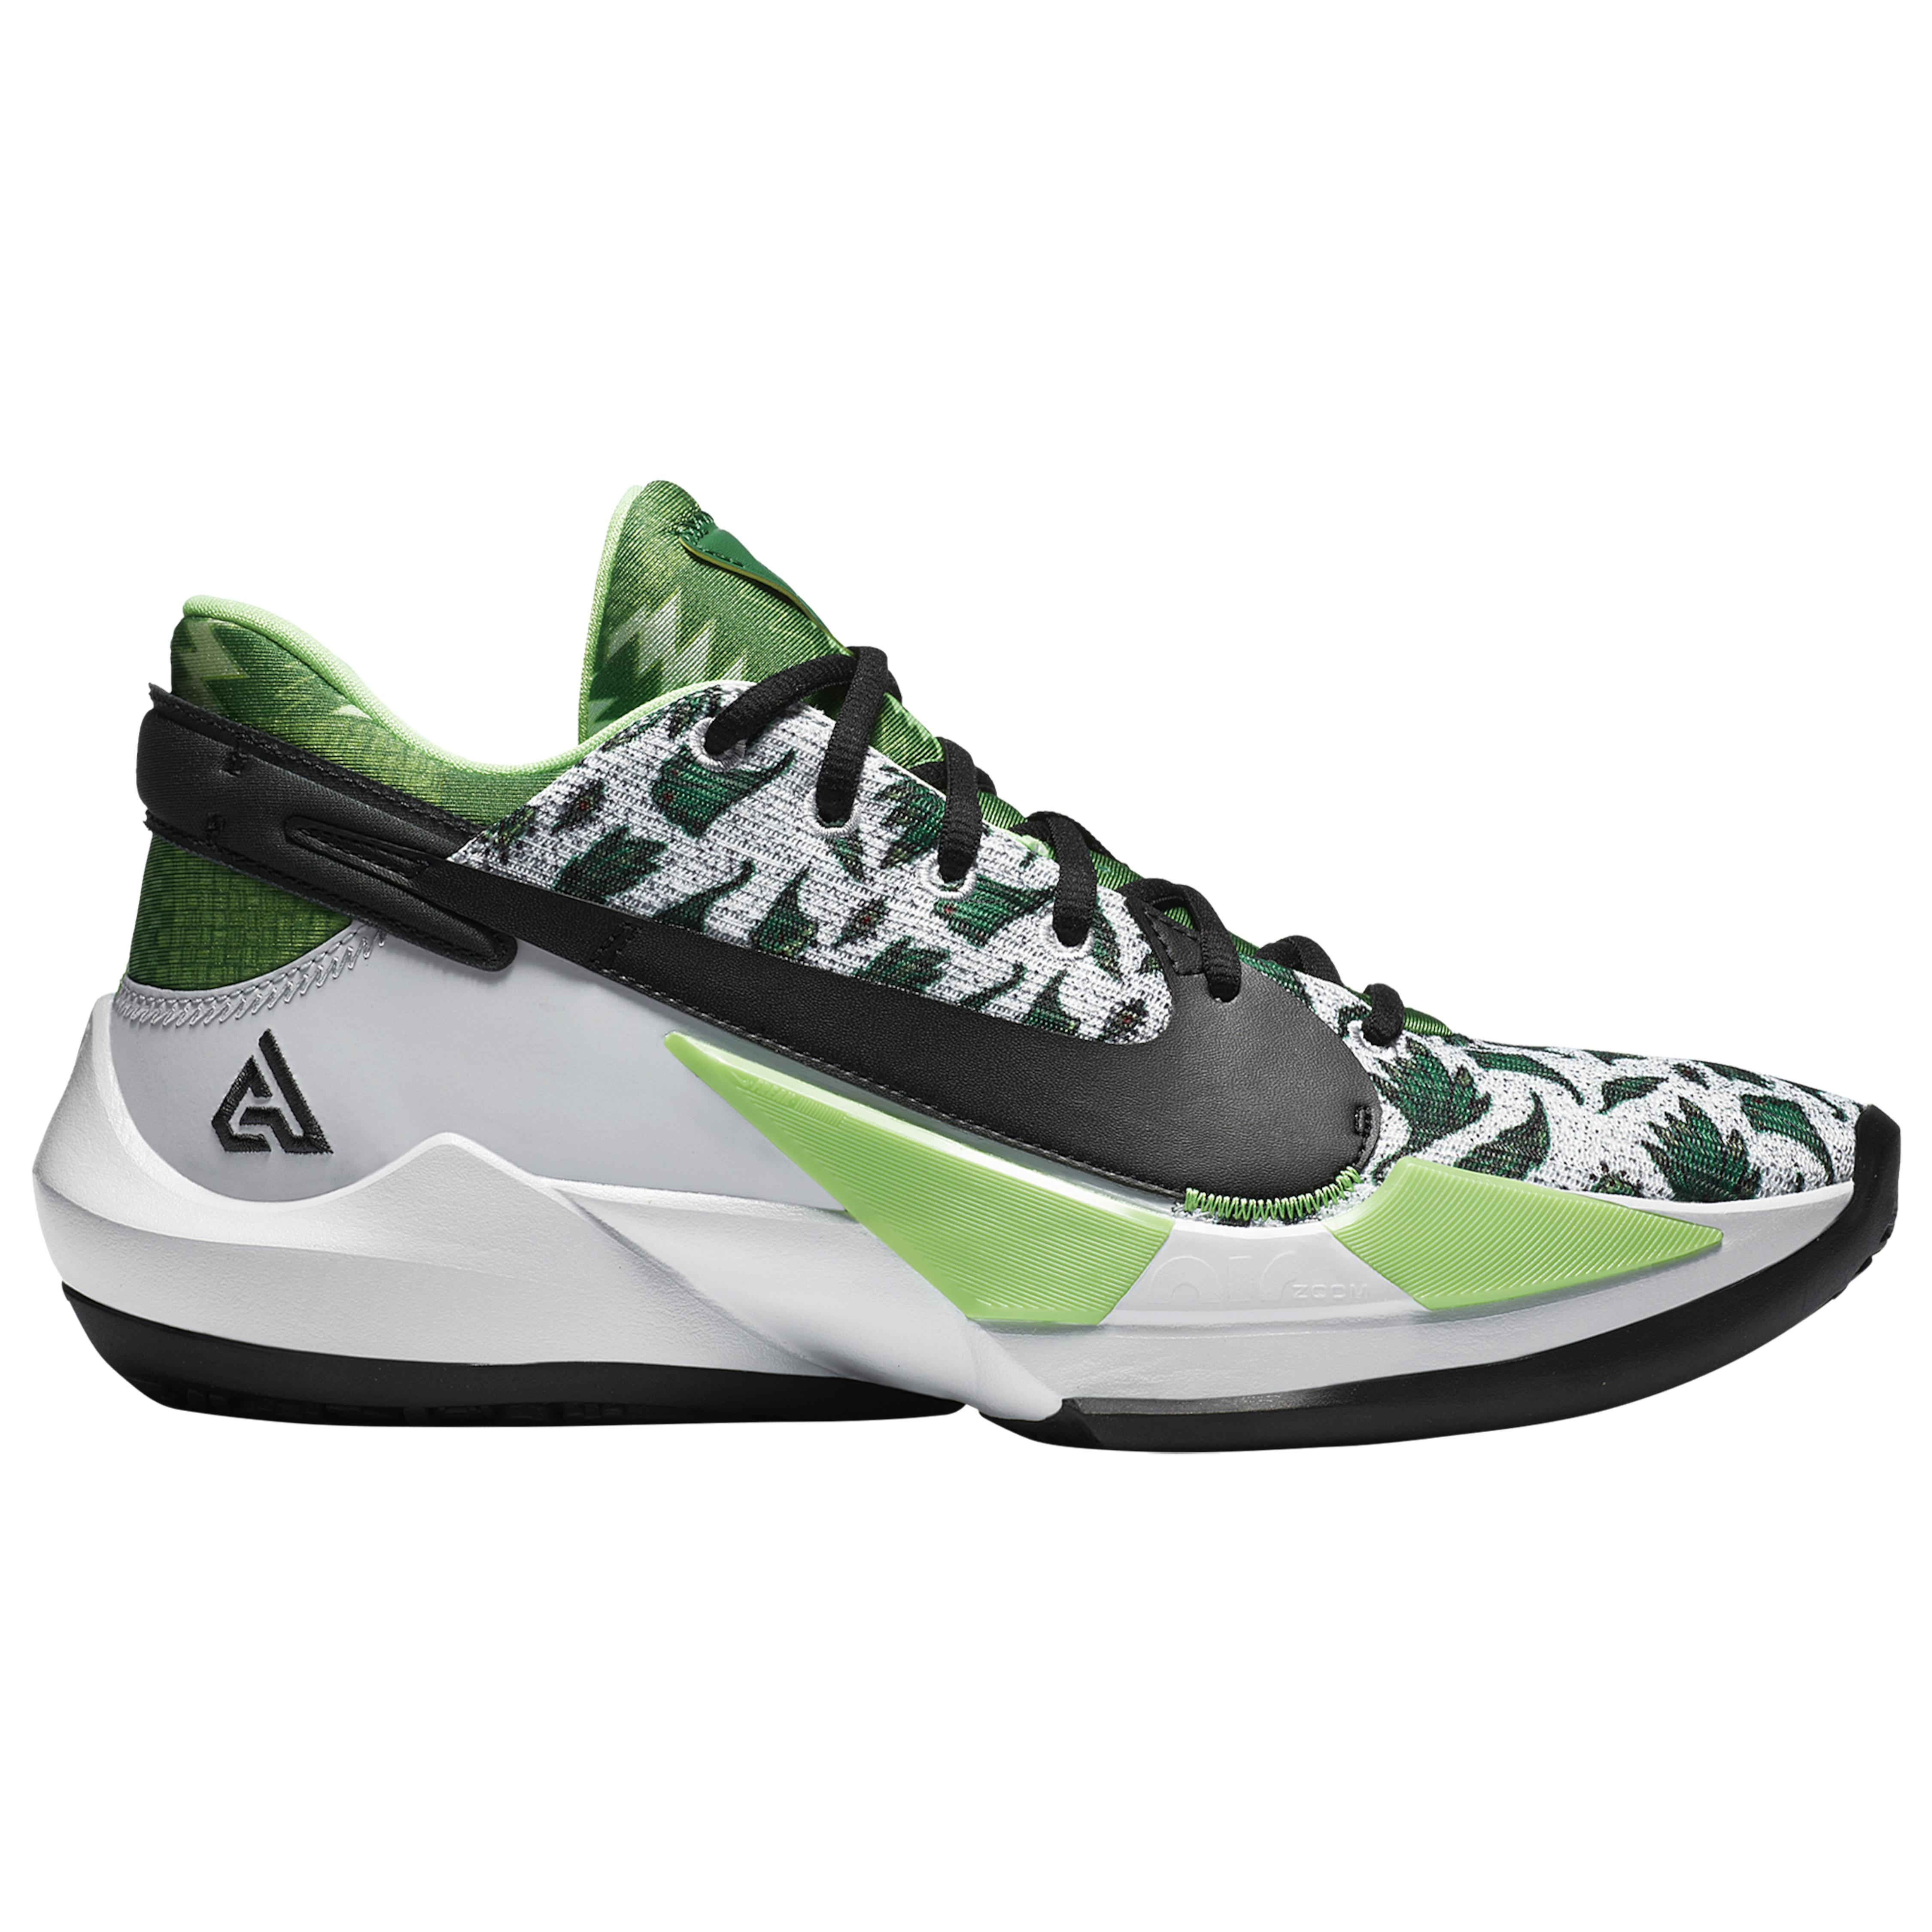 Nike Zoom Freak 2 in Green/White/Silver (Green) for Men - Lyst